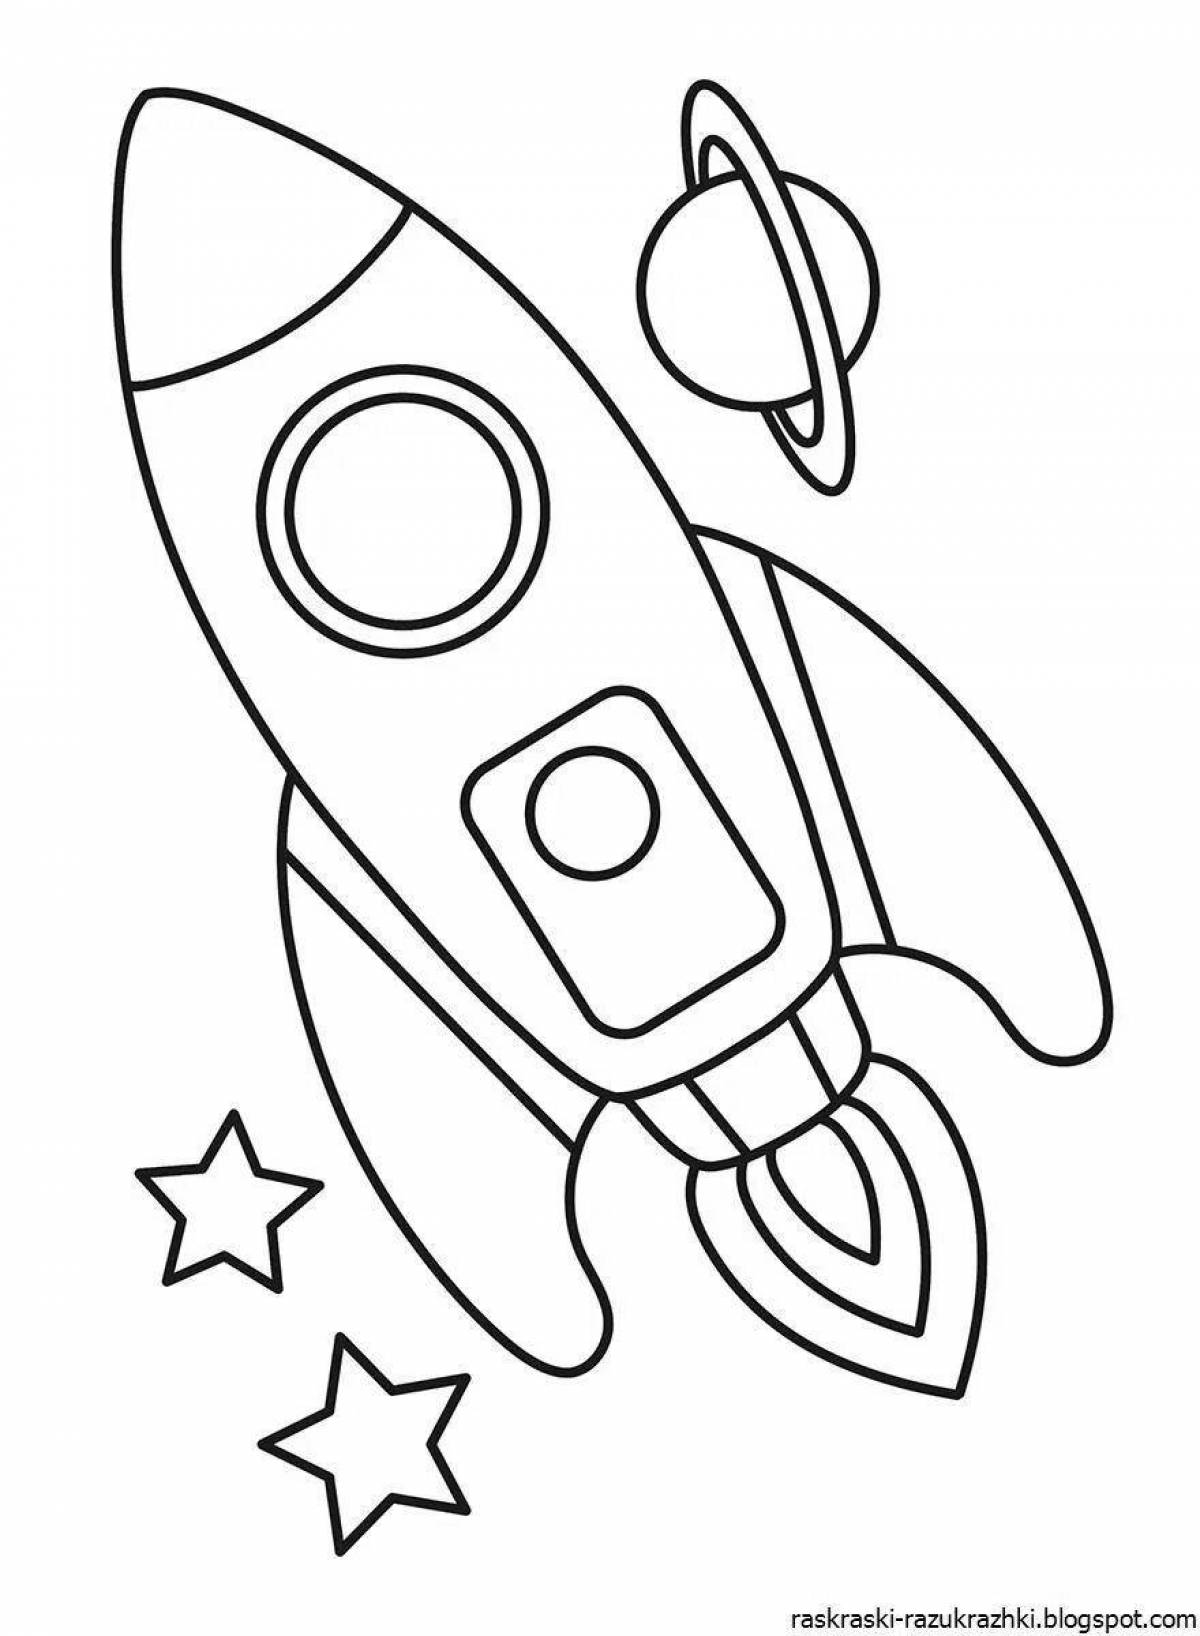 Ракета рисунок для детей 5 лет. Ракета раскраска. Космос раскраска для детей. Ракета раскраска для детей. Раскраска ракета для детей 3-4 лет.